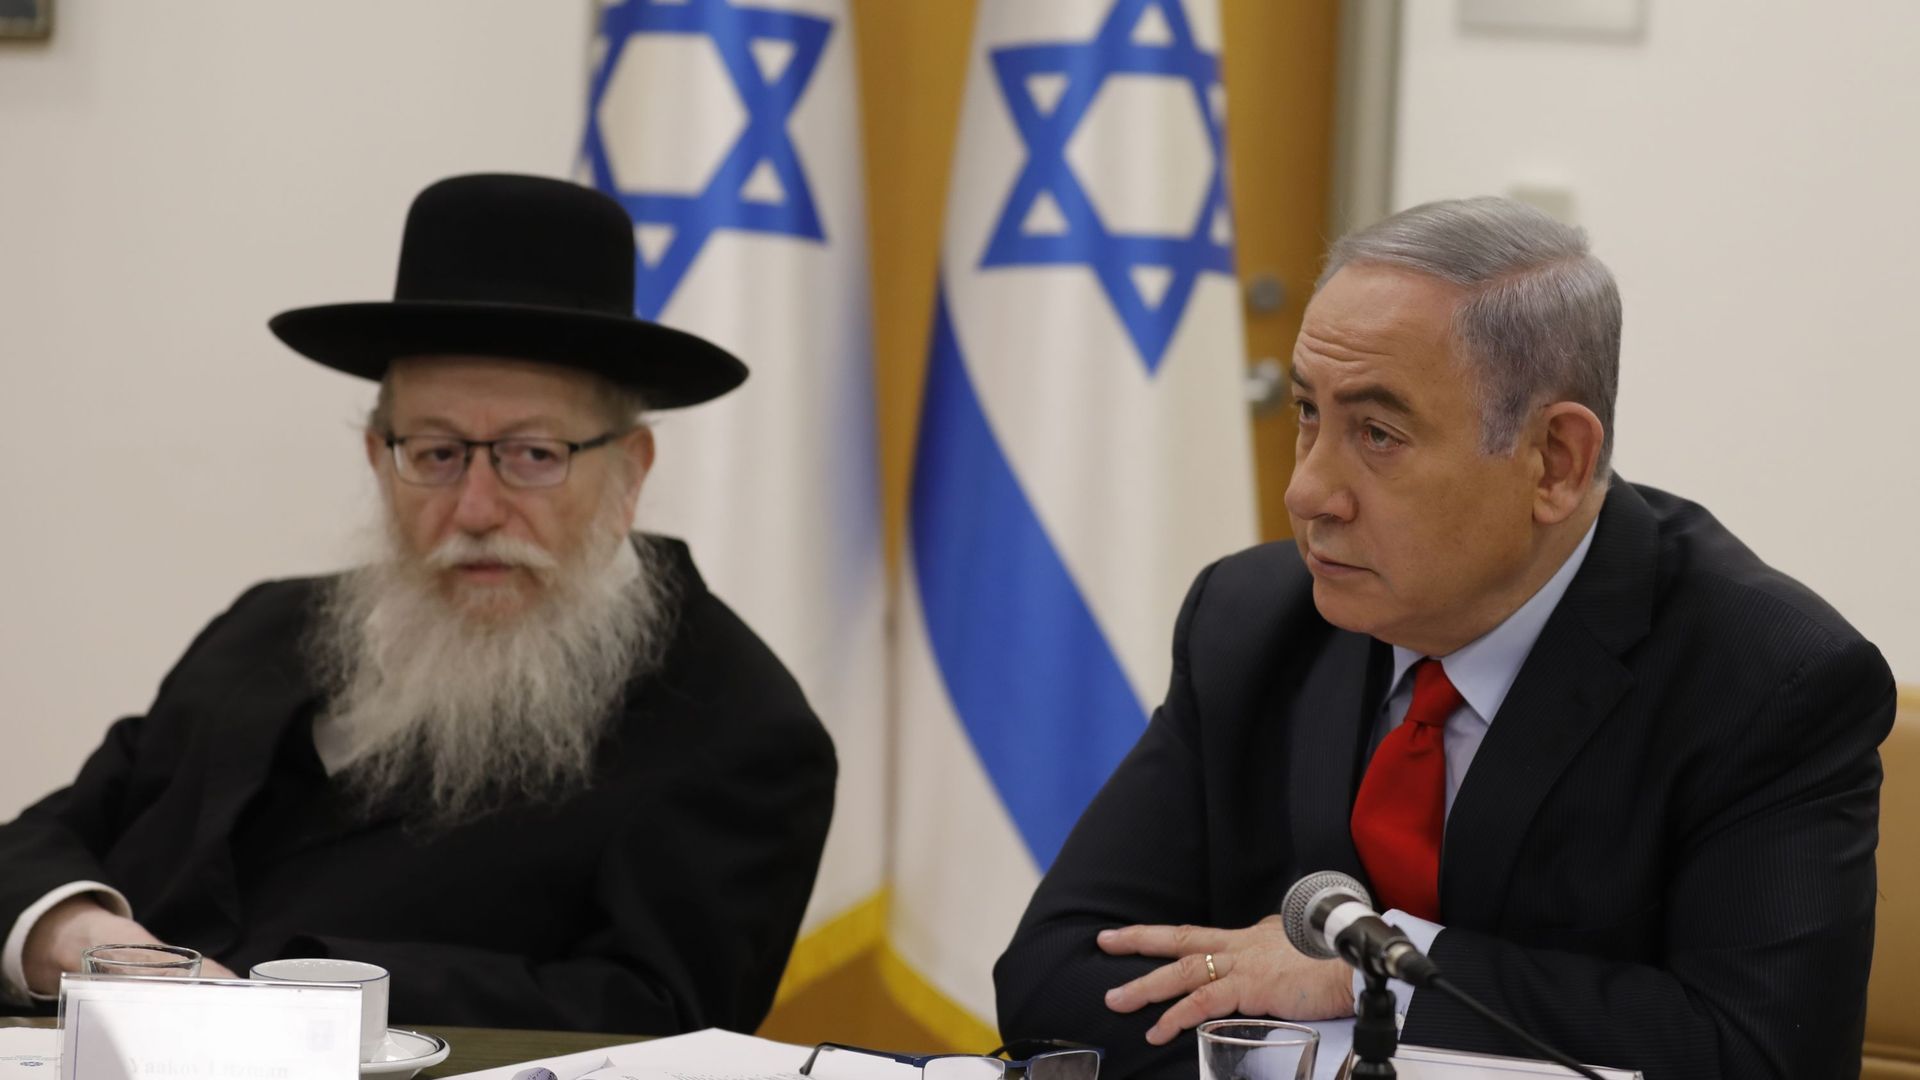 Le ministre de la santé israélien est lui-même ultra-orthodoxe et testé positif au covid 19